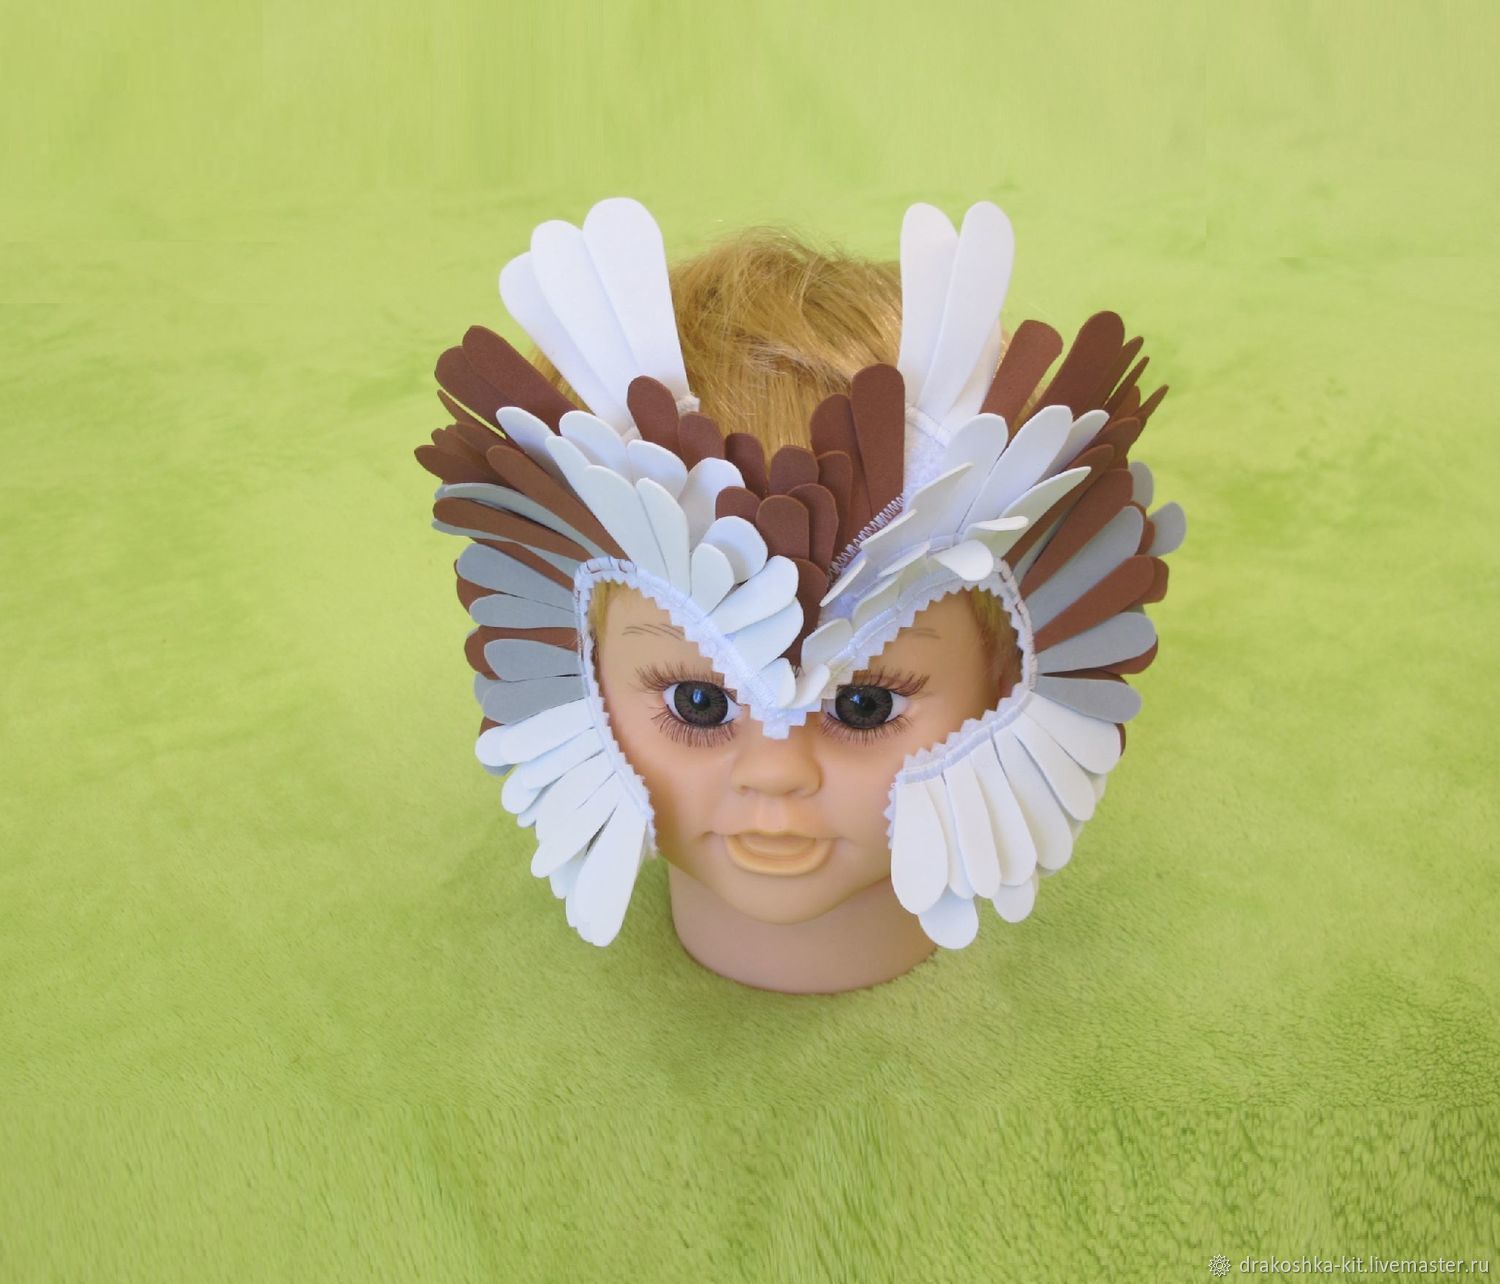 Карнавальный костюм совы с глазами, митенками и перьями